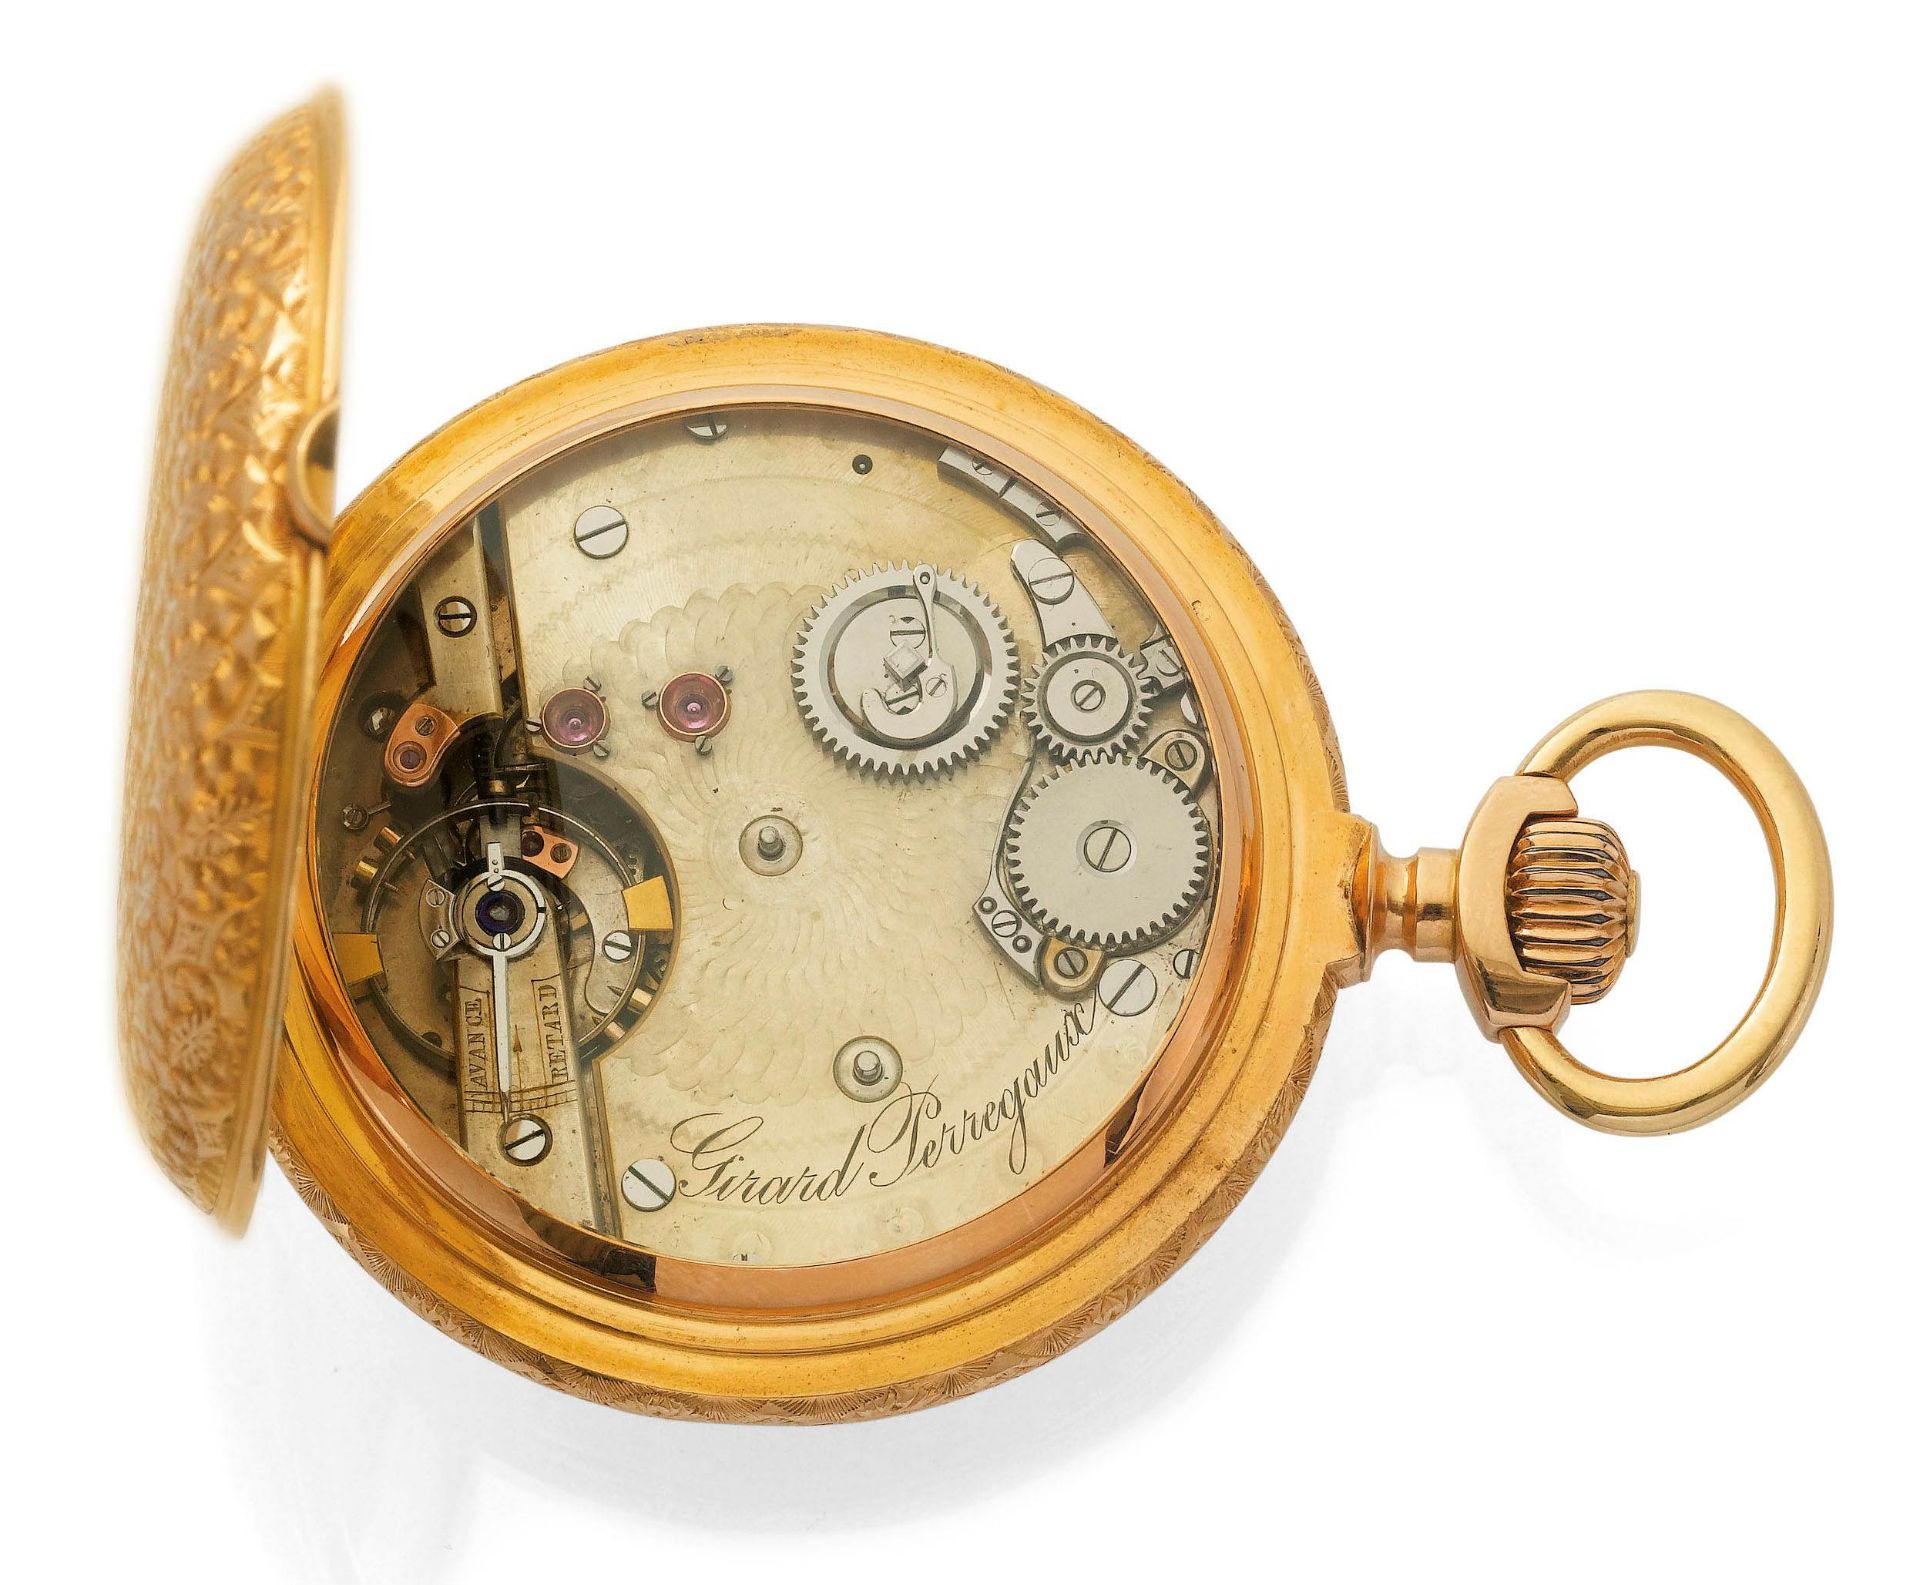 Girard Perregaux, schwerer und seltener Taschen-Chronometer, ca. 1880. - Bild 2 aus 8